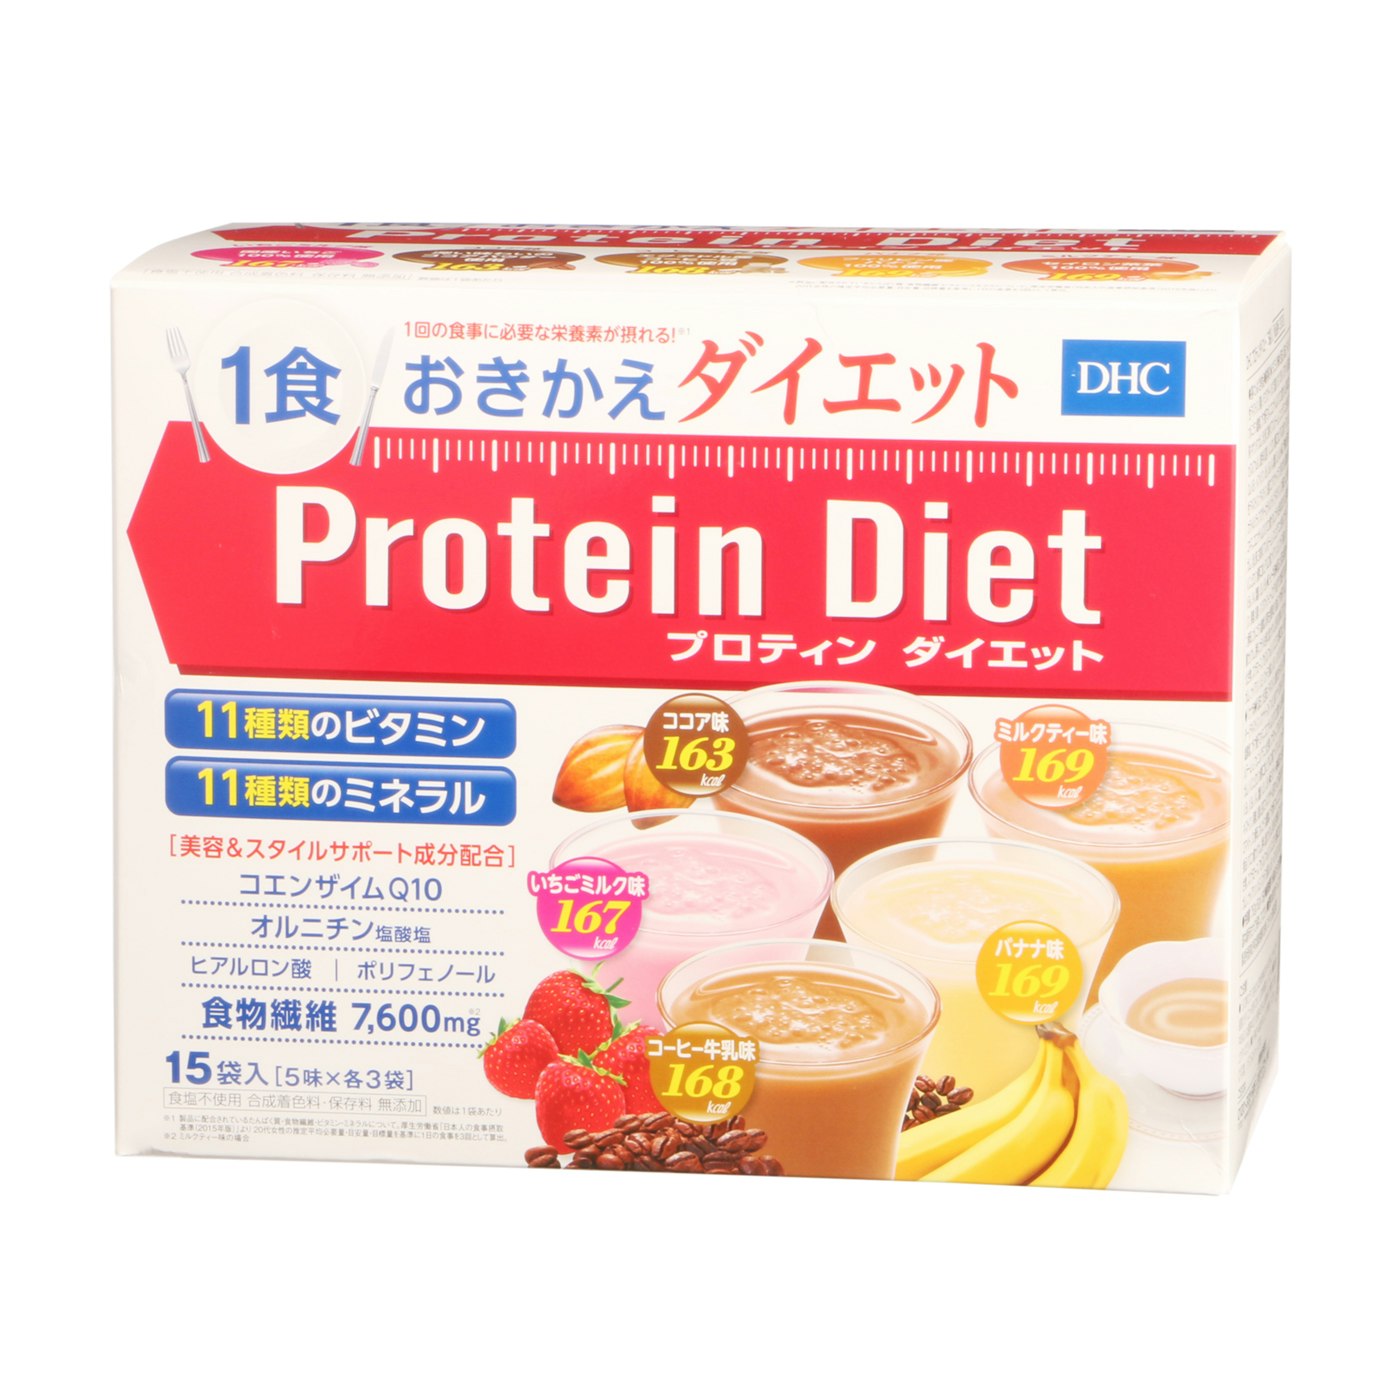 コスメ/美容いちごミルク74袋 DHC プロテインダイエット - excelbilearn.com